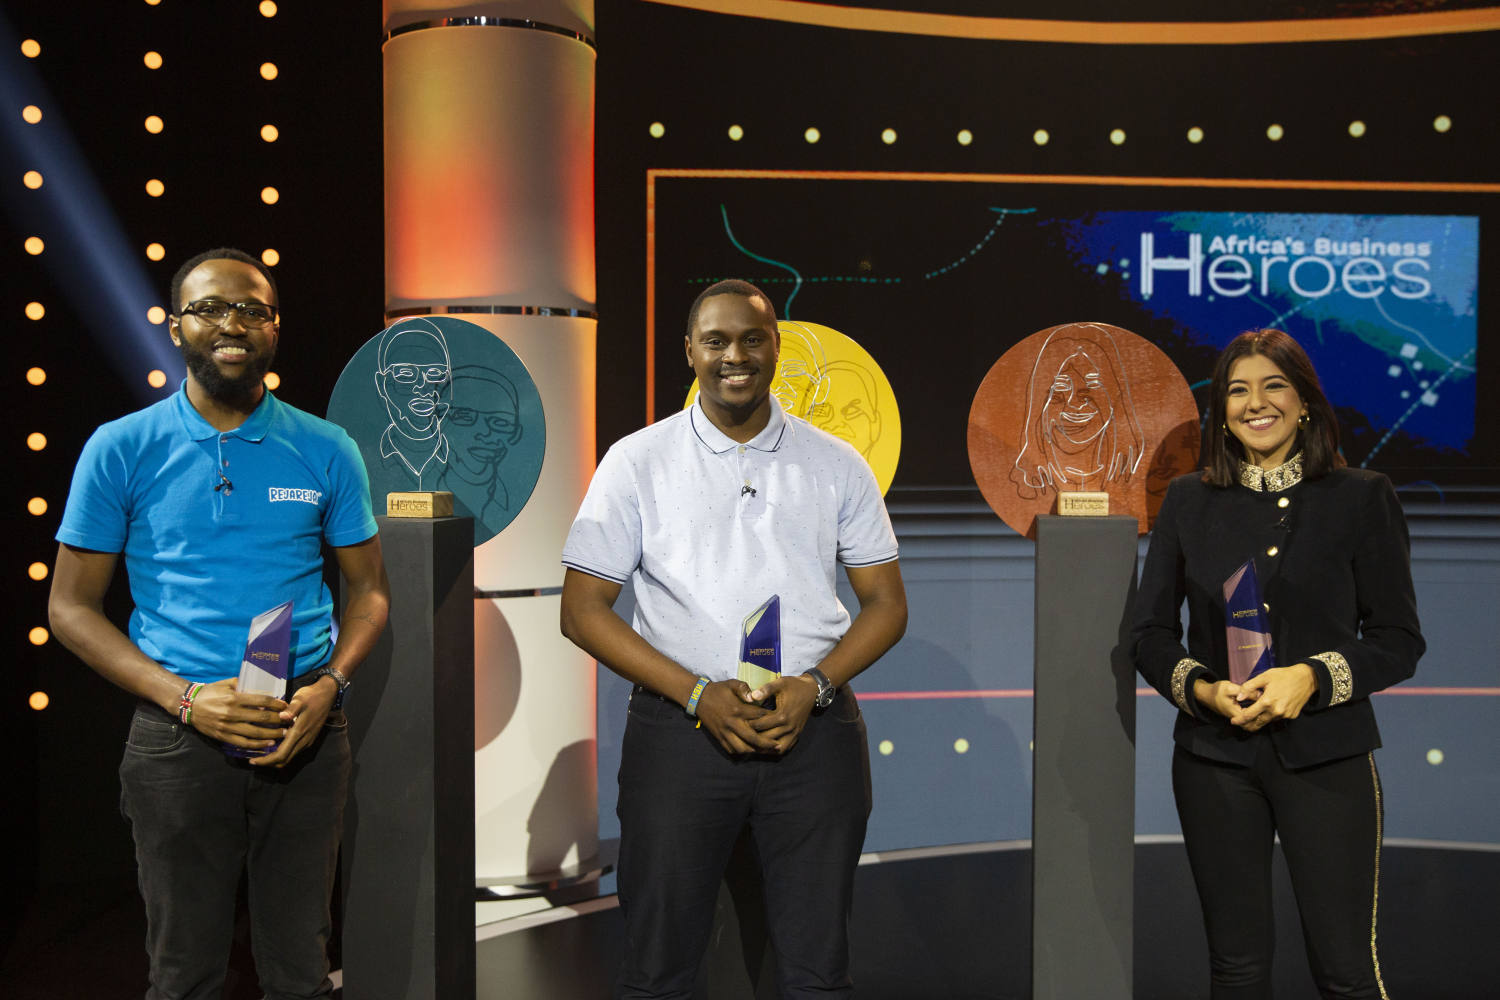 2022年度非洲創業英雄大賽經過精彩角逐，前三甲最終塵埃落定（從左：來自肯尼亞的亞軍得主Tesh Mbaabu、來自坦桑尼亞的冠軍得主Elia Timotheo、來自埃及的季軍得主Nadia Gamal El Din）